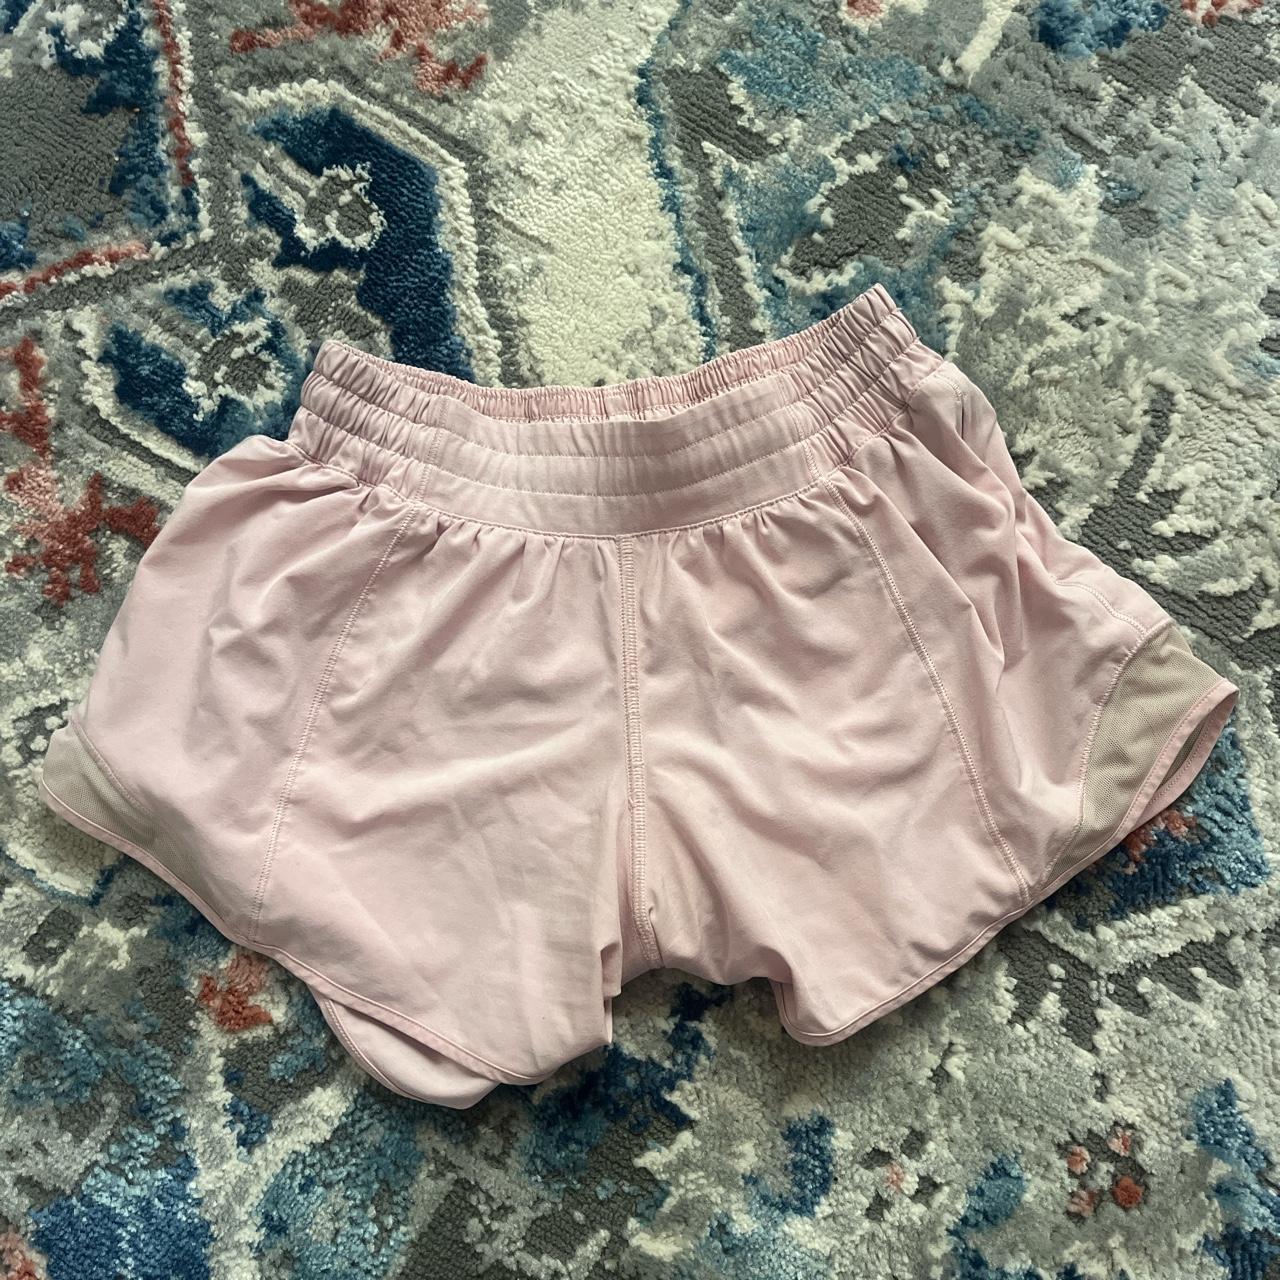 Miami pink lulu lemon hottie hot shorts - Depop